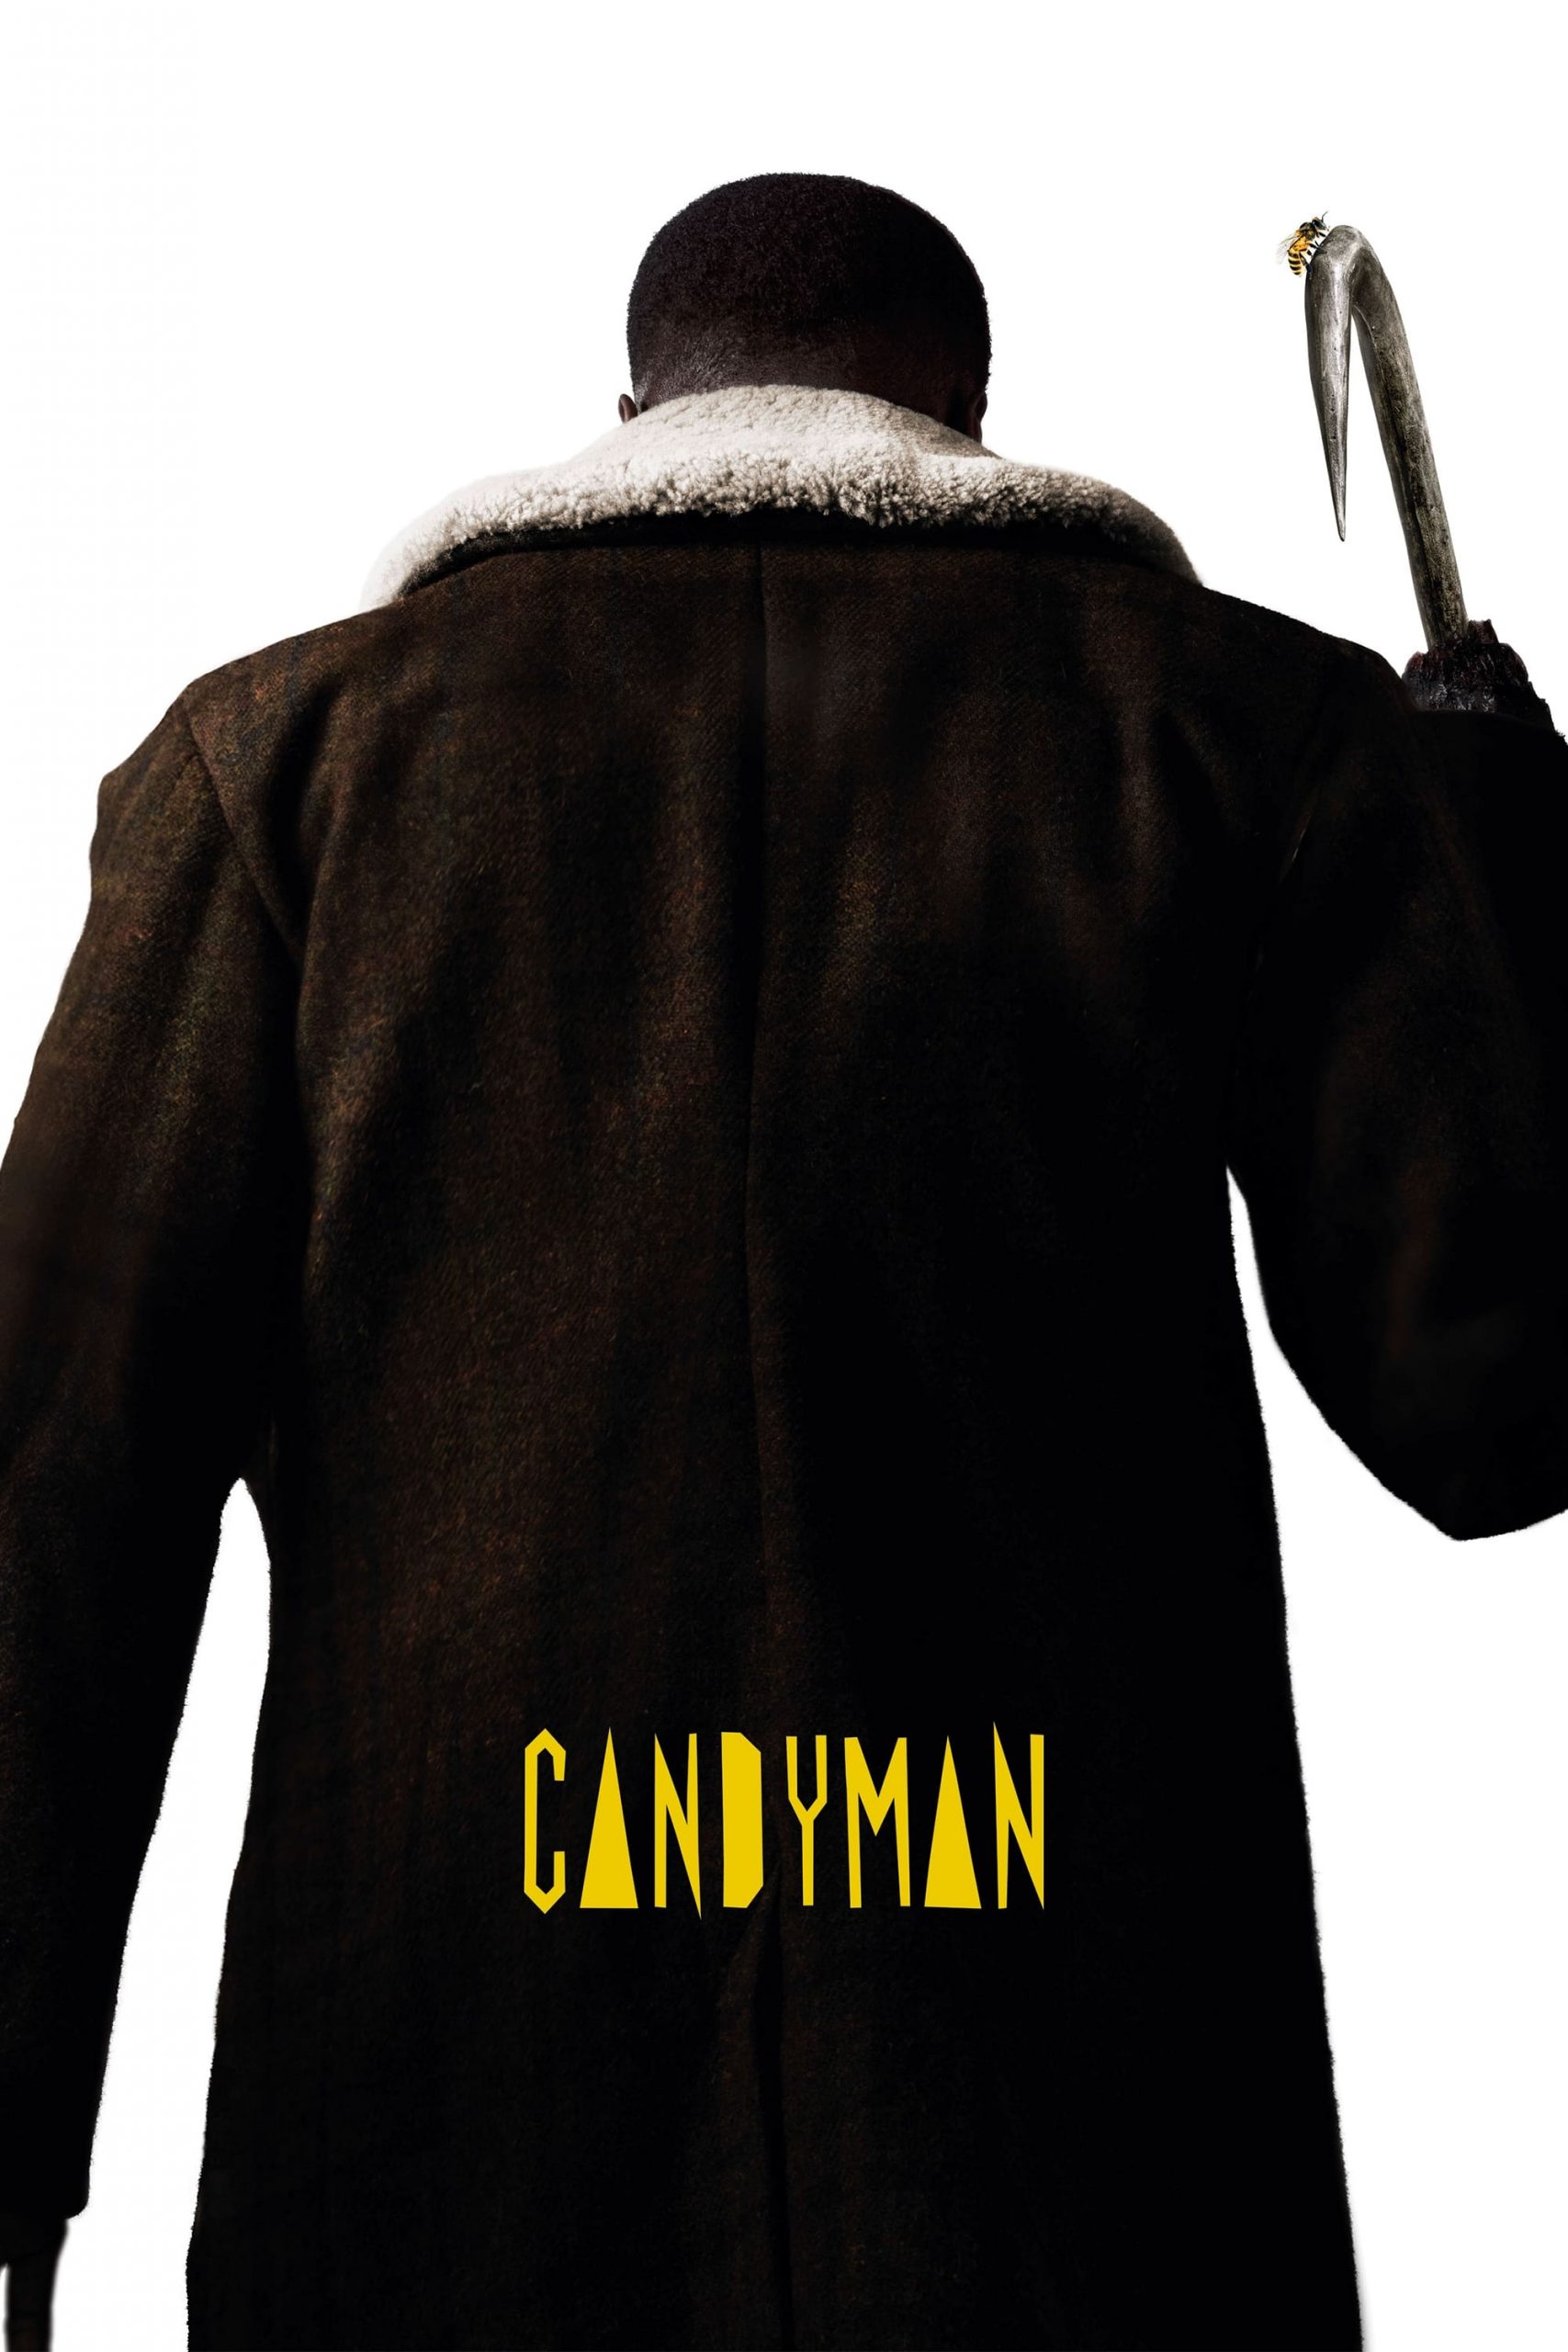 مشاهدة فيلم Candyman 2021 مدبلج